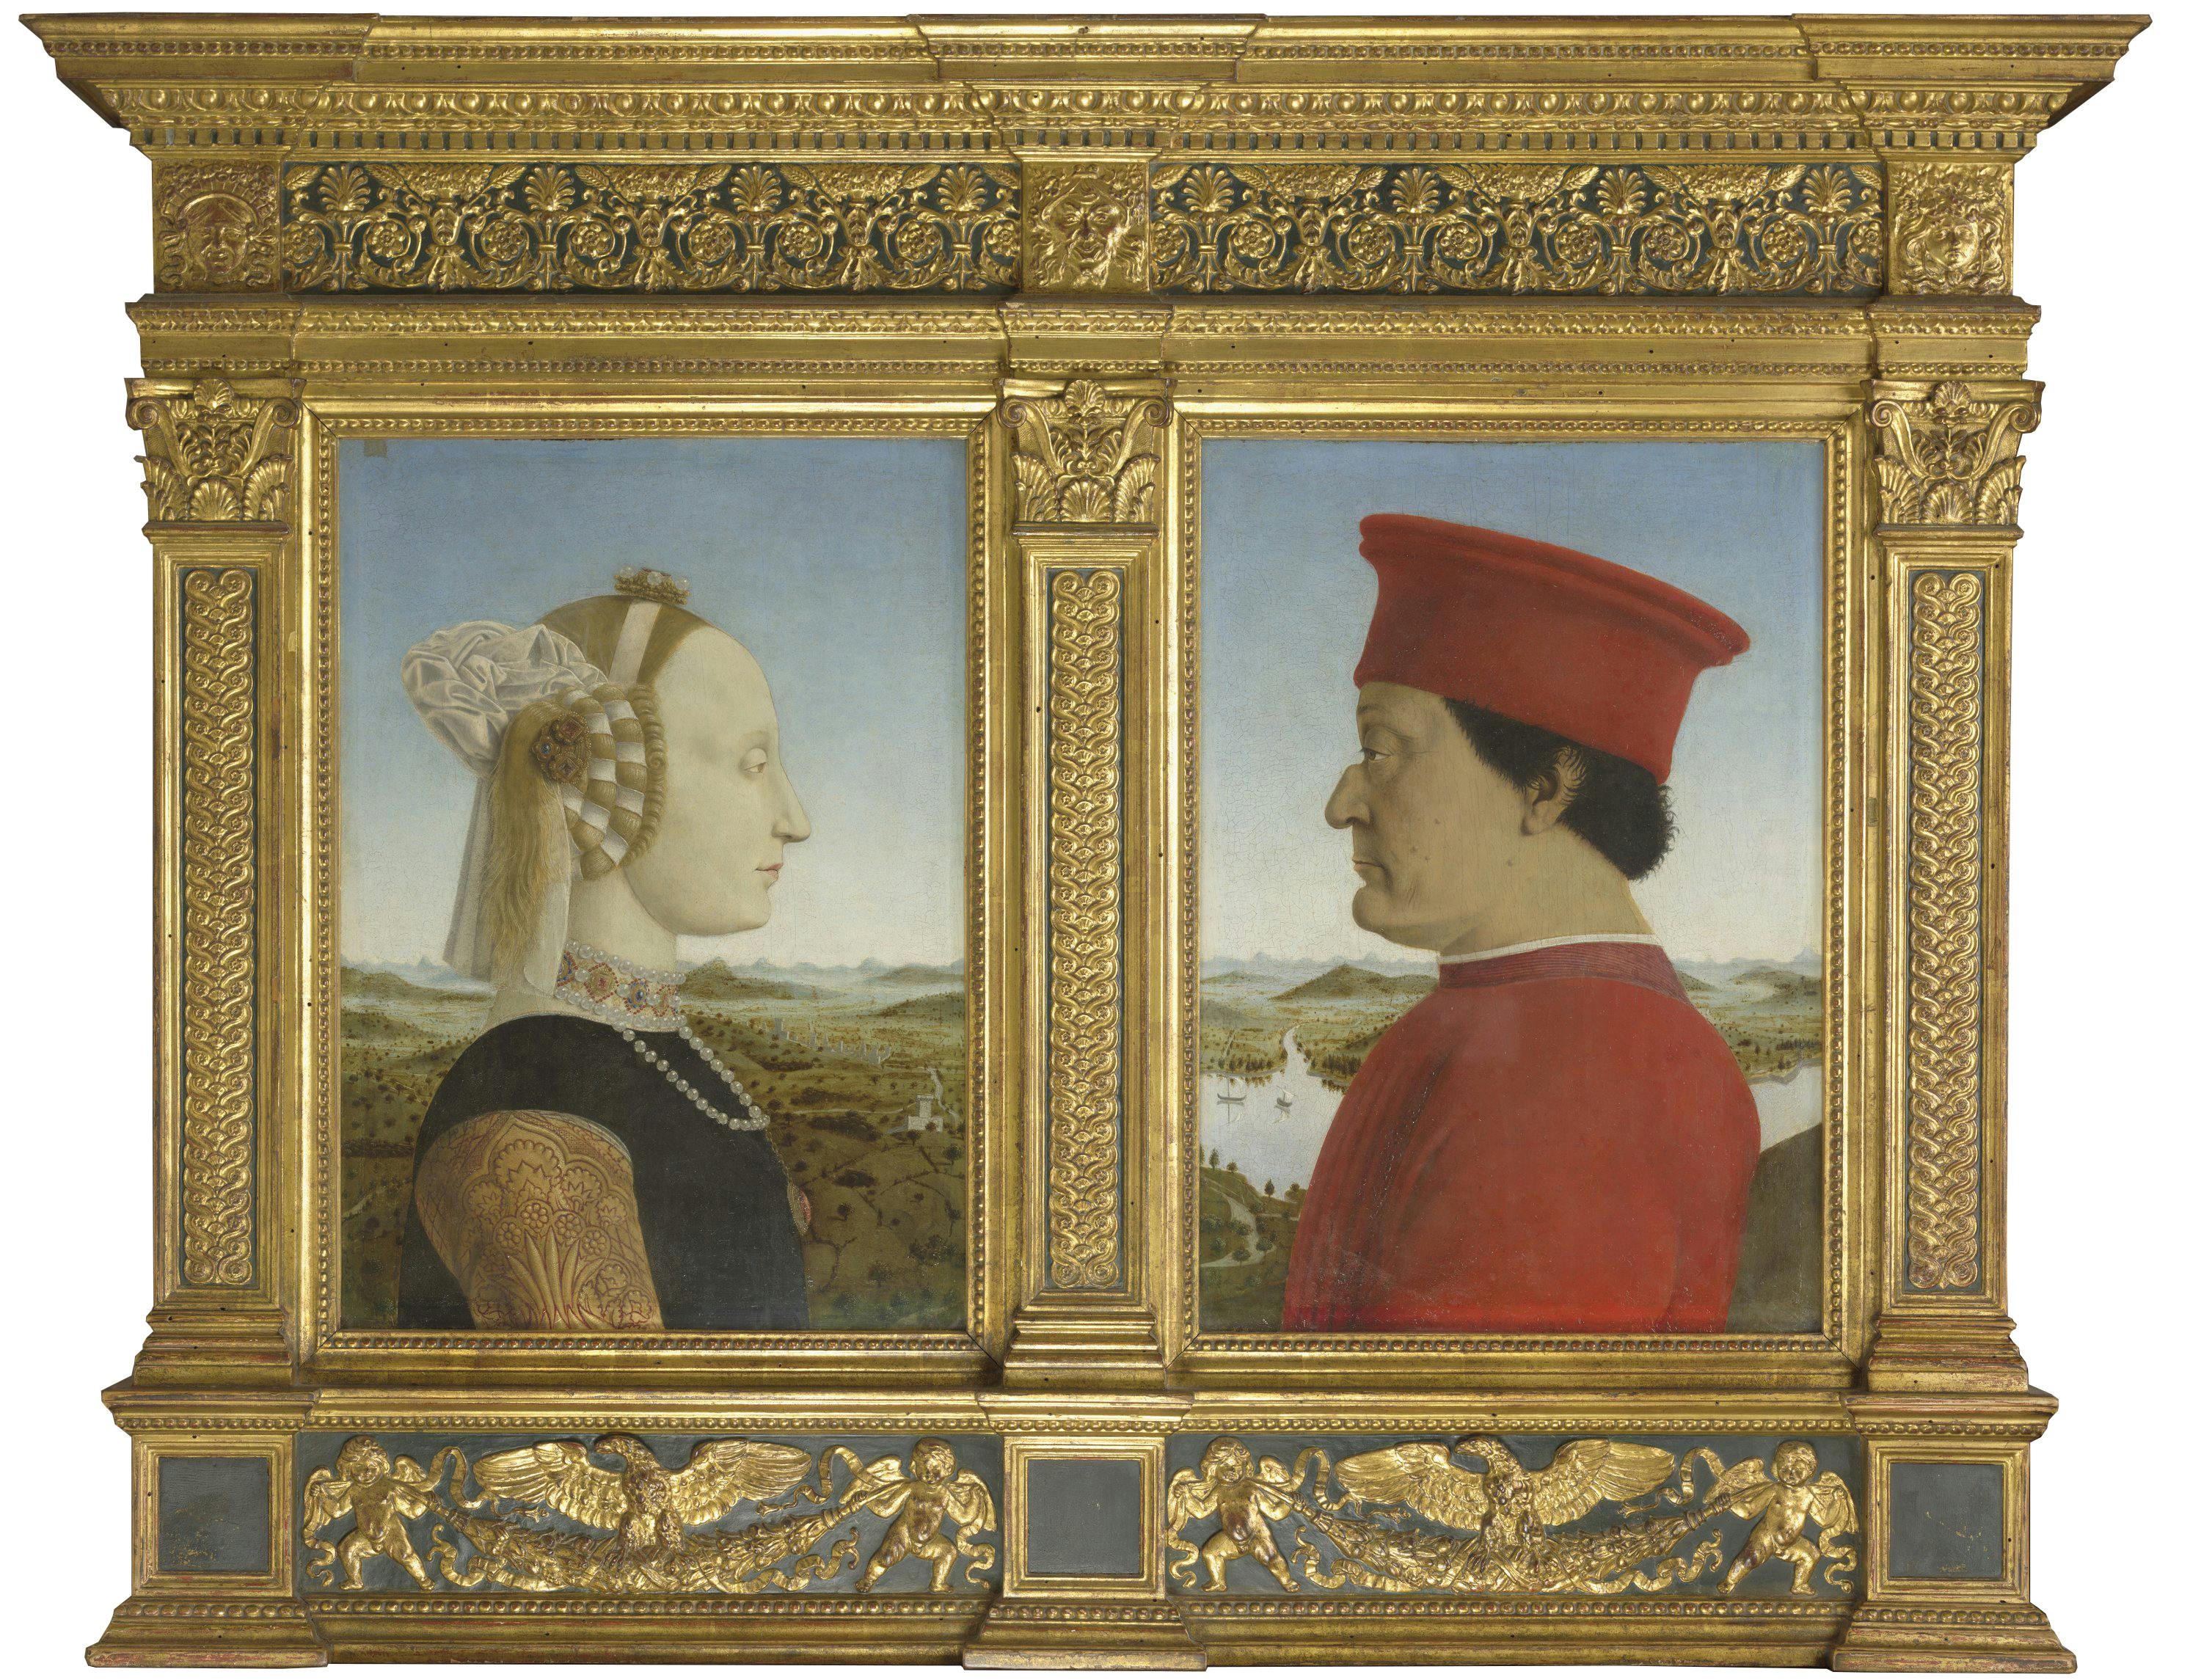 The Duke and Duchess of Urbino Federico da Montefeltro and Battista Sforza